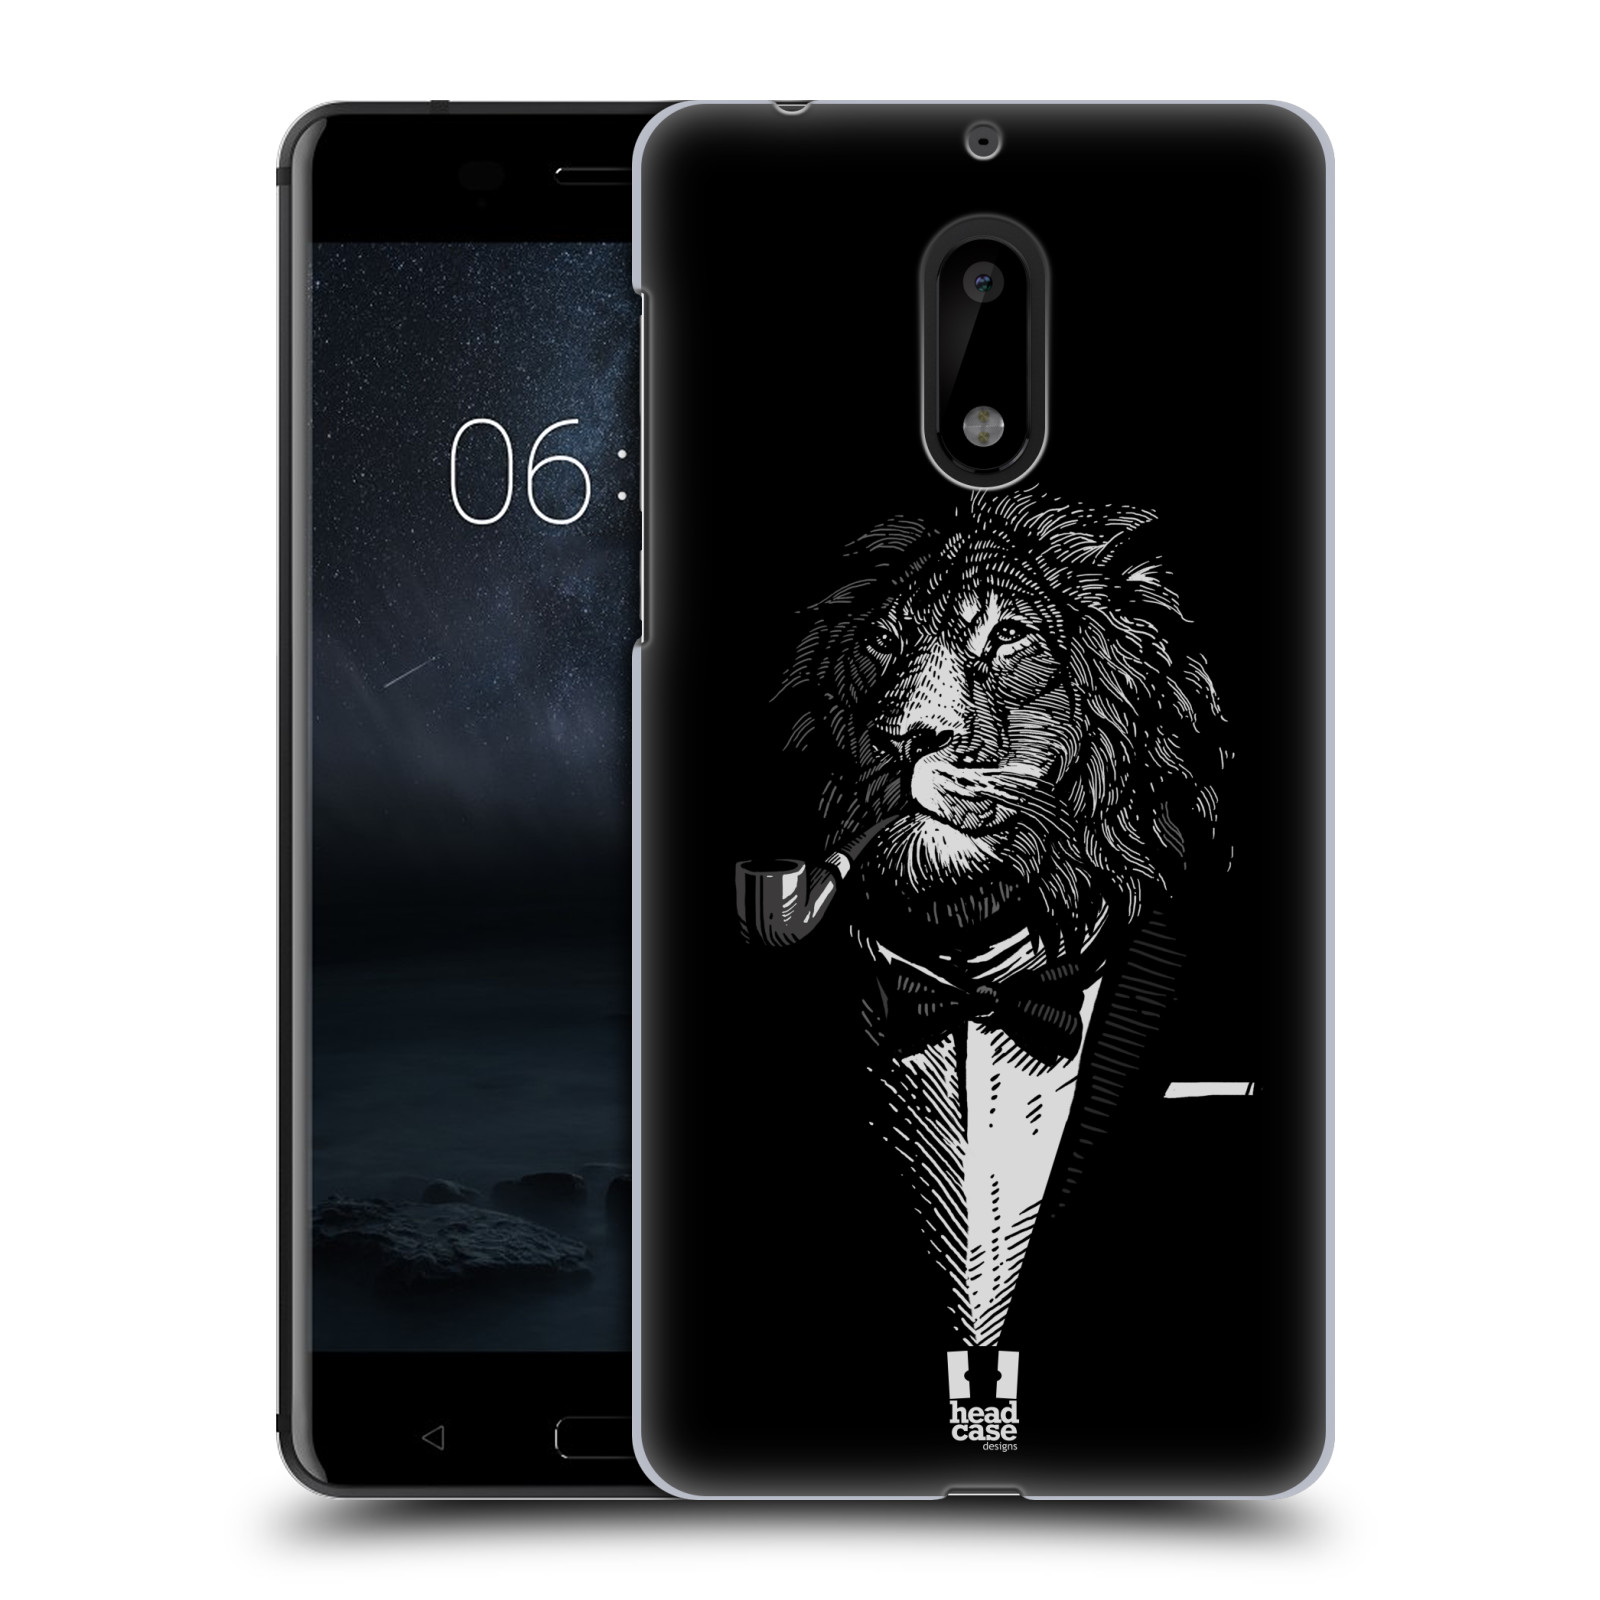 HEAD CASE plastový obal na mobil Nokia 6 vzor Zvíře v obleku lev